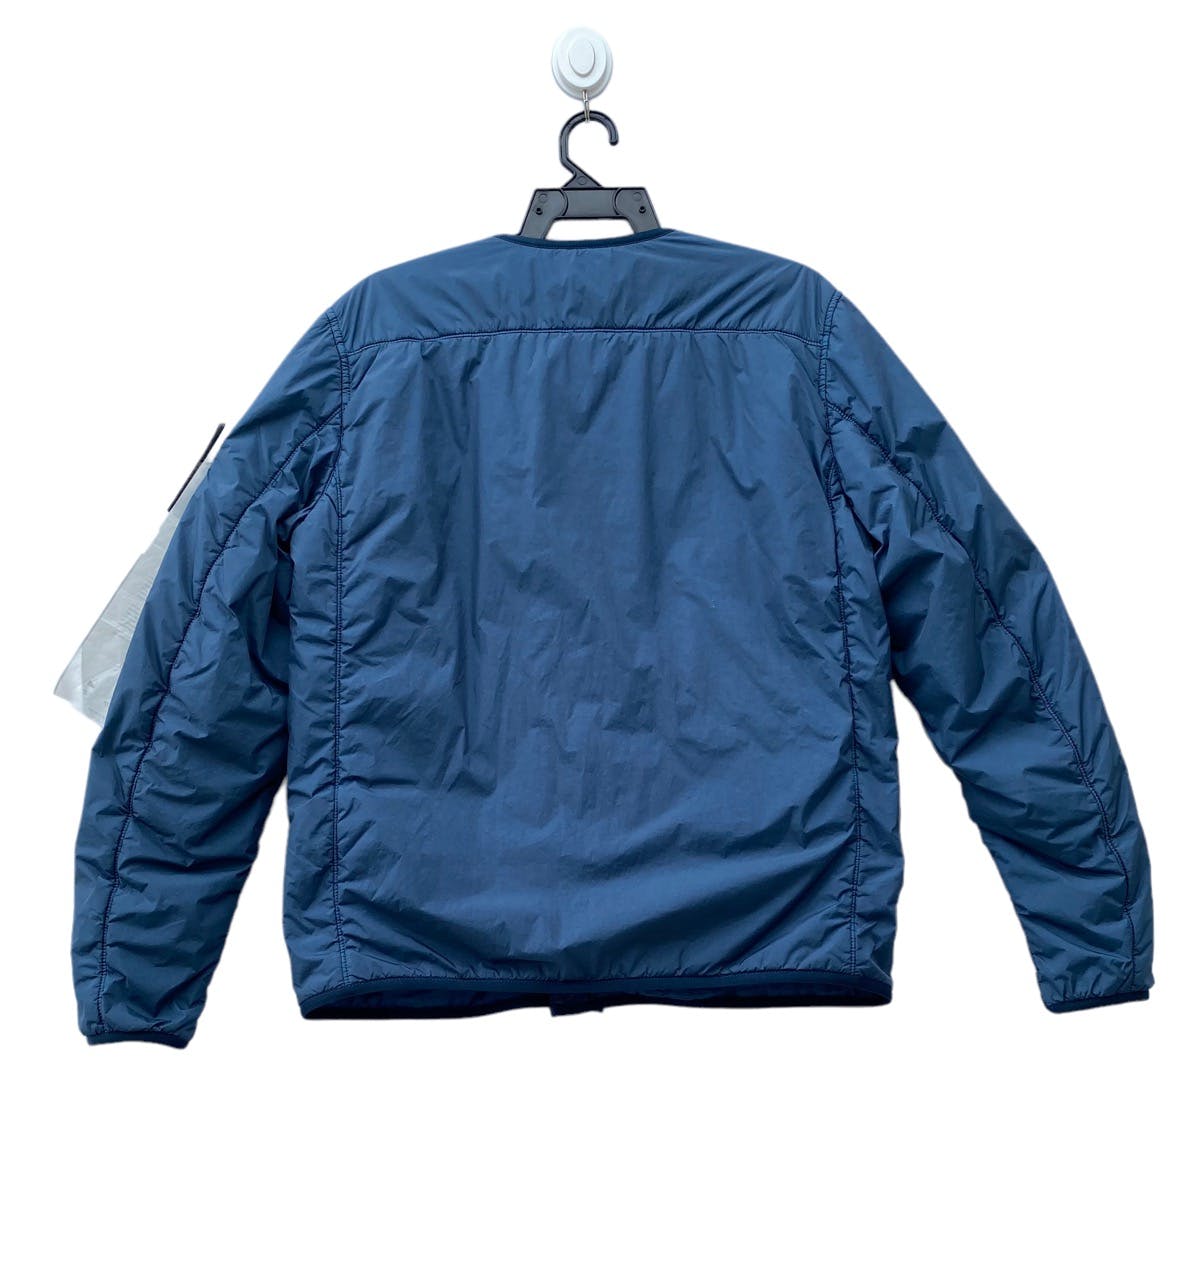 STONE ISLAND garment dyed crinkle reps ny blouson jacket - 9